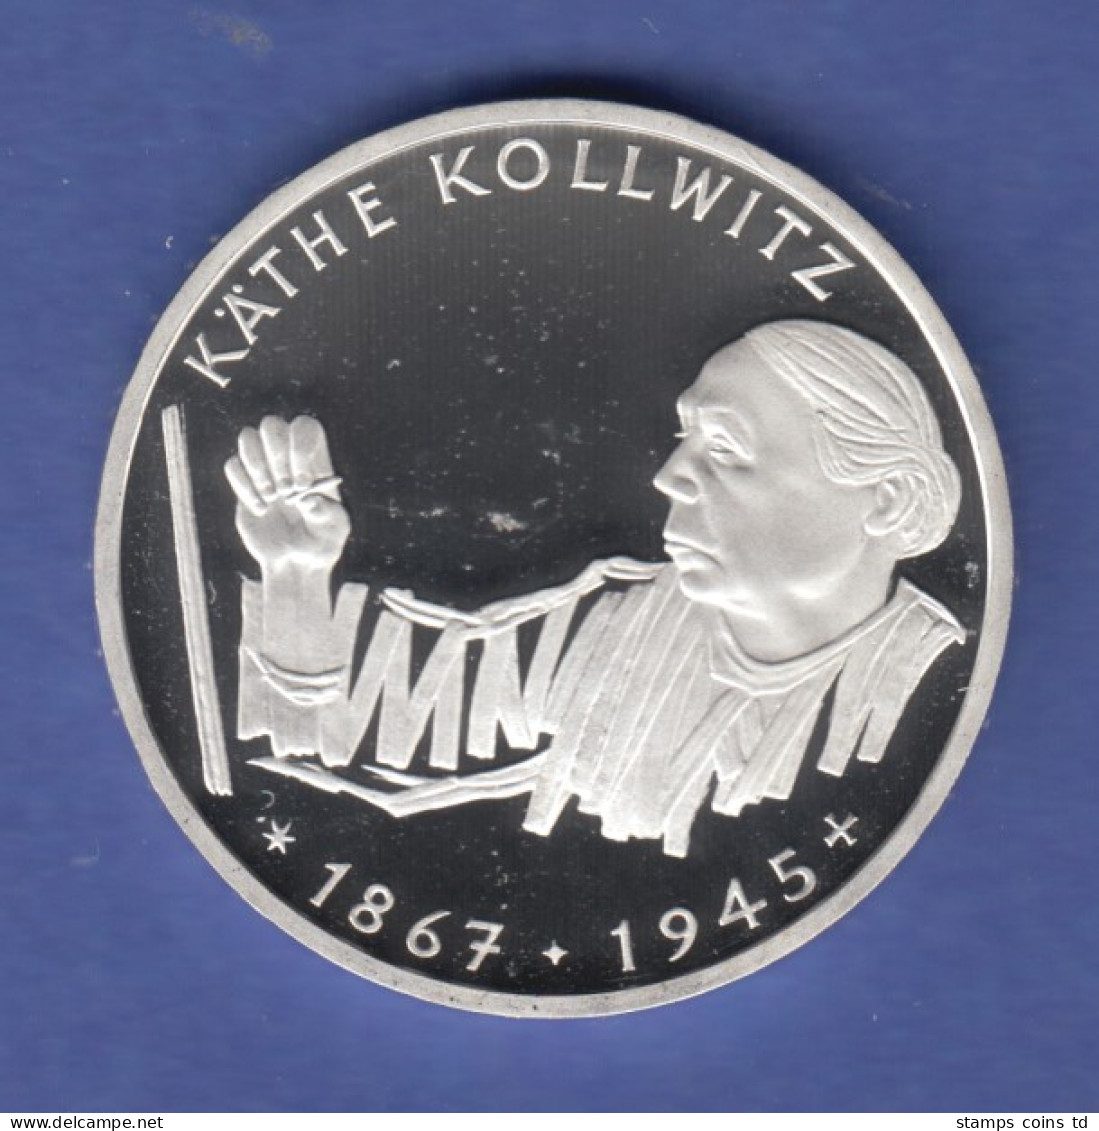 Bundesrepublik 10DM Silber-Gedenkmünze 1992  Käthe Kollwitz  PP - 10 Mark